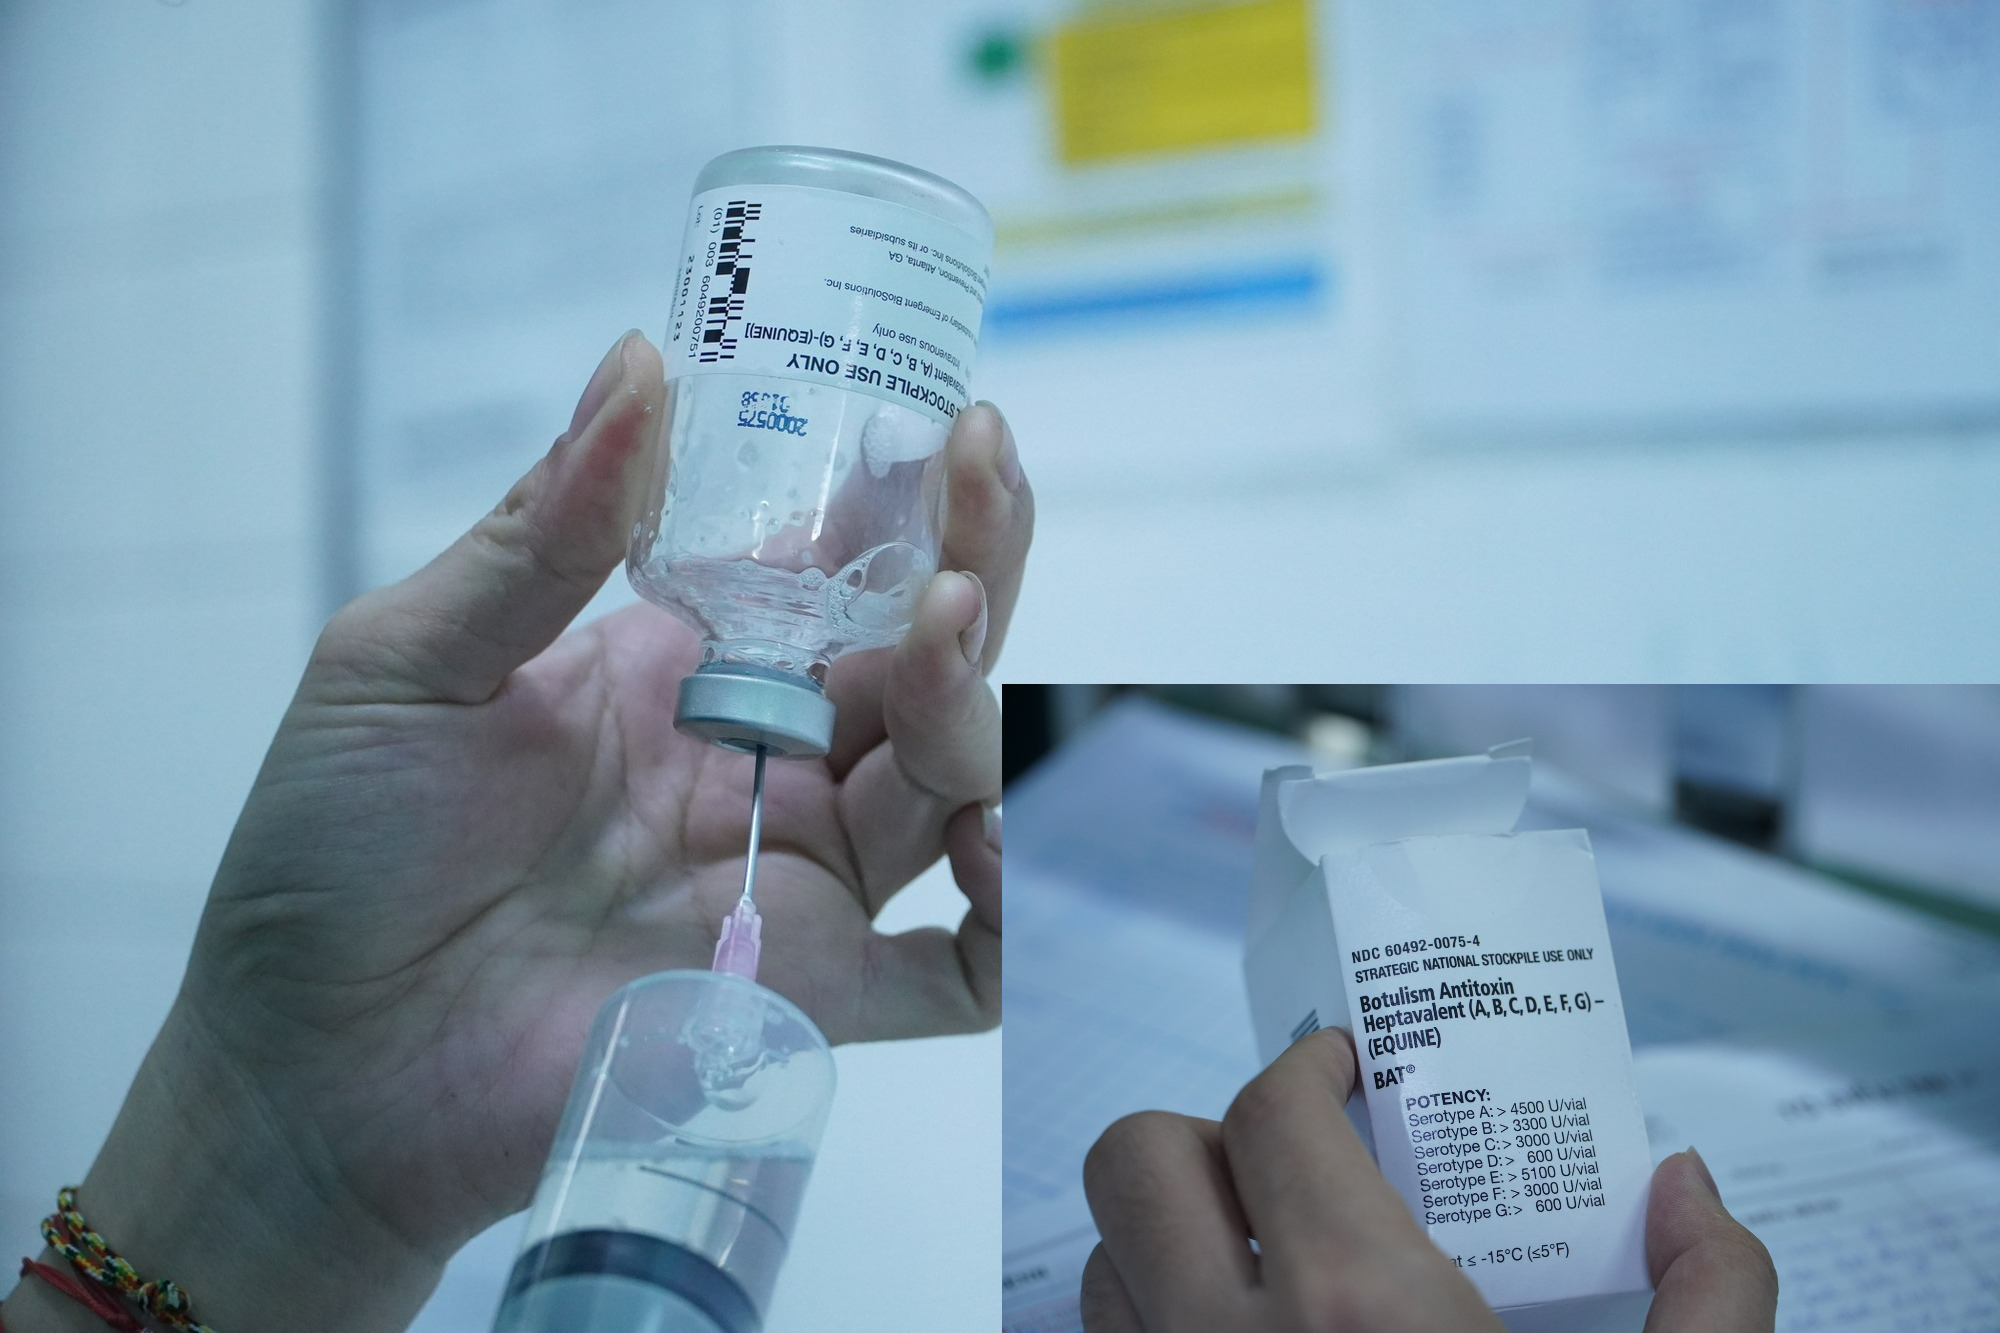 Thuốc giải độc Botulinum đã về đến Việt Nam để cứu giúp 3 bệnh nhân ngộ độc đang bị liệt cơ - Ảnh 1.